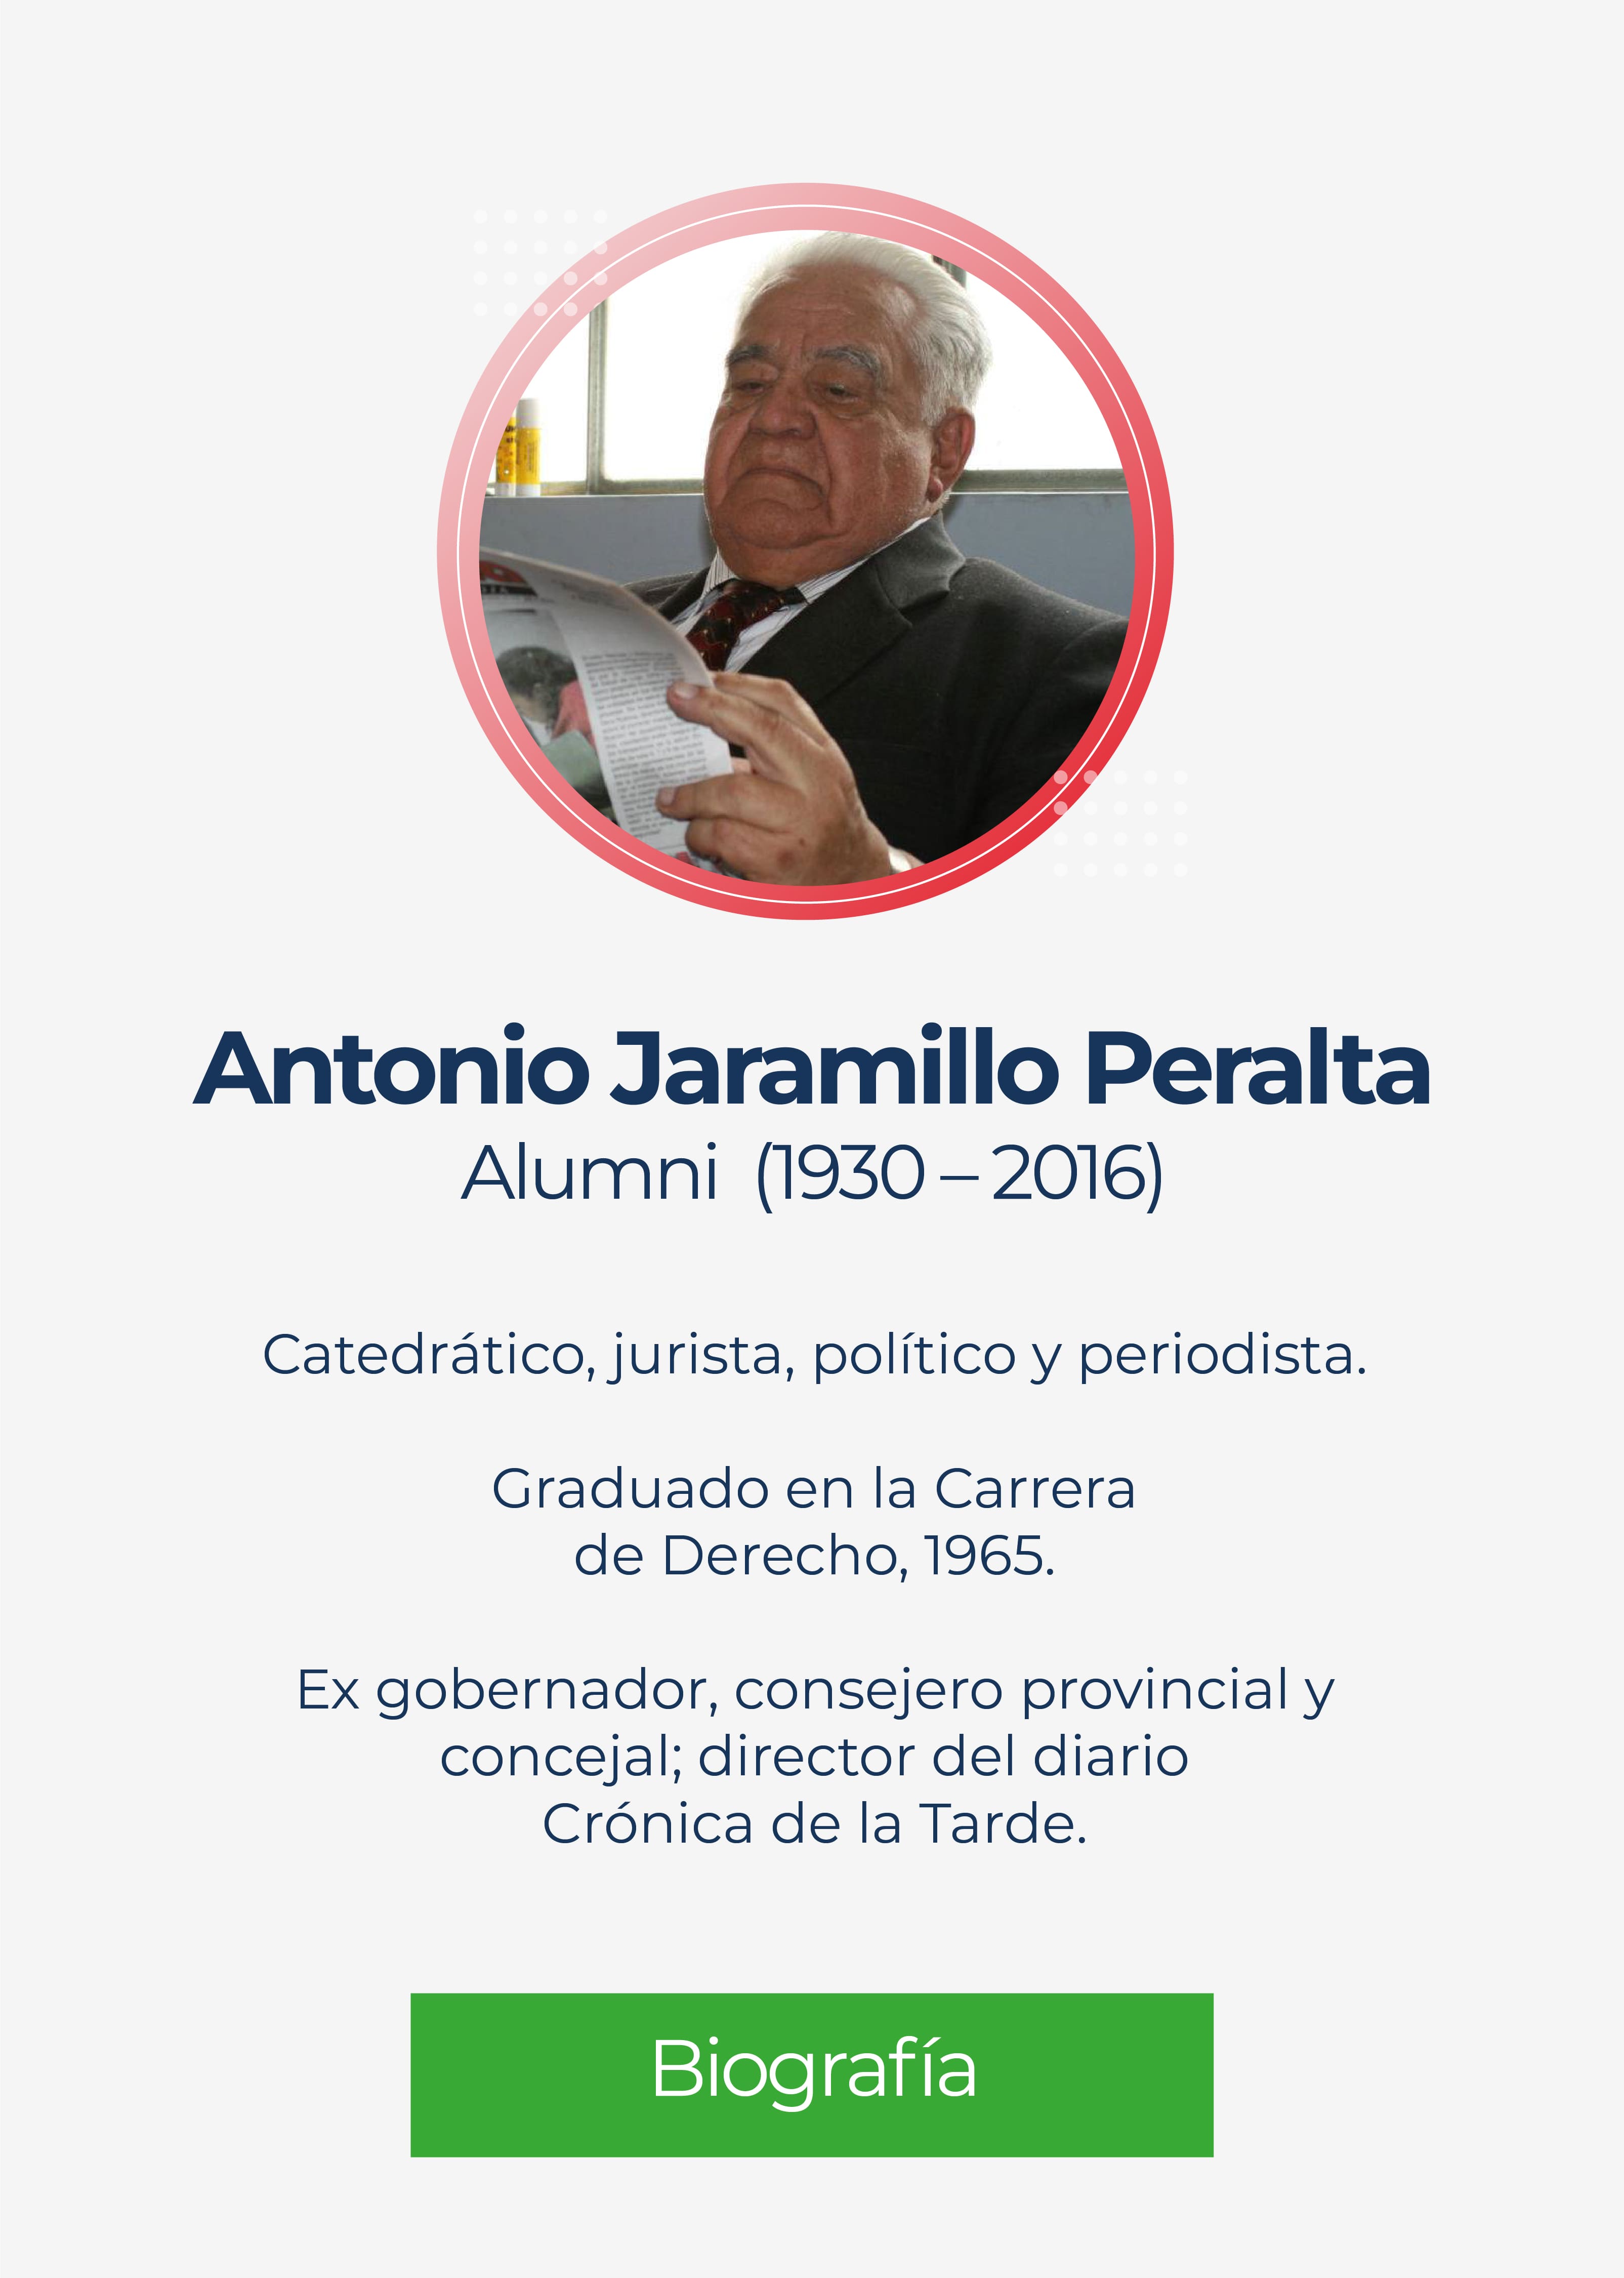 Antonio Jaramillo Peralta